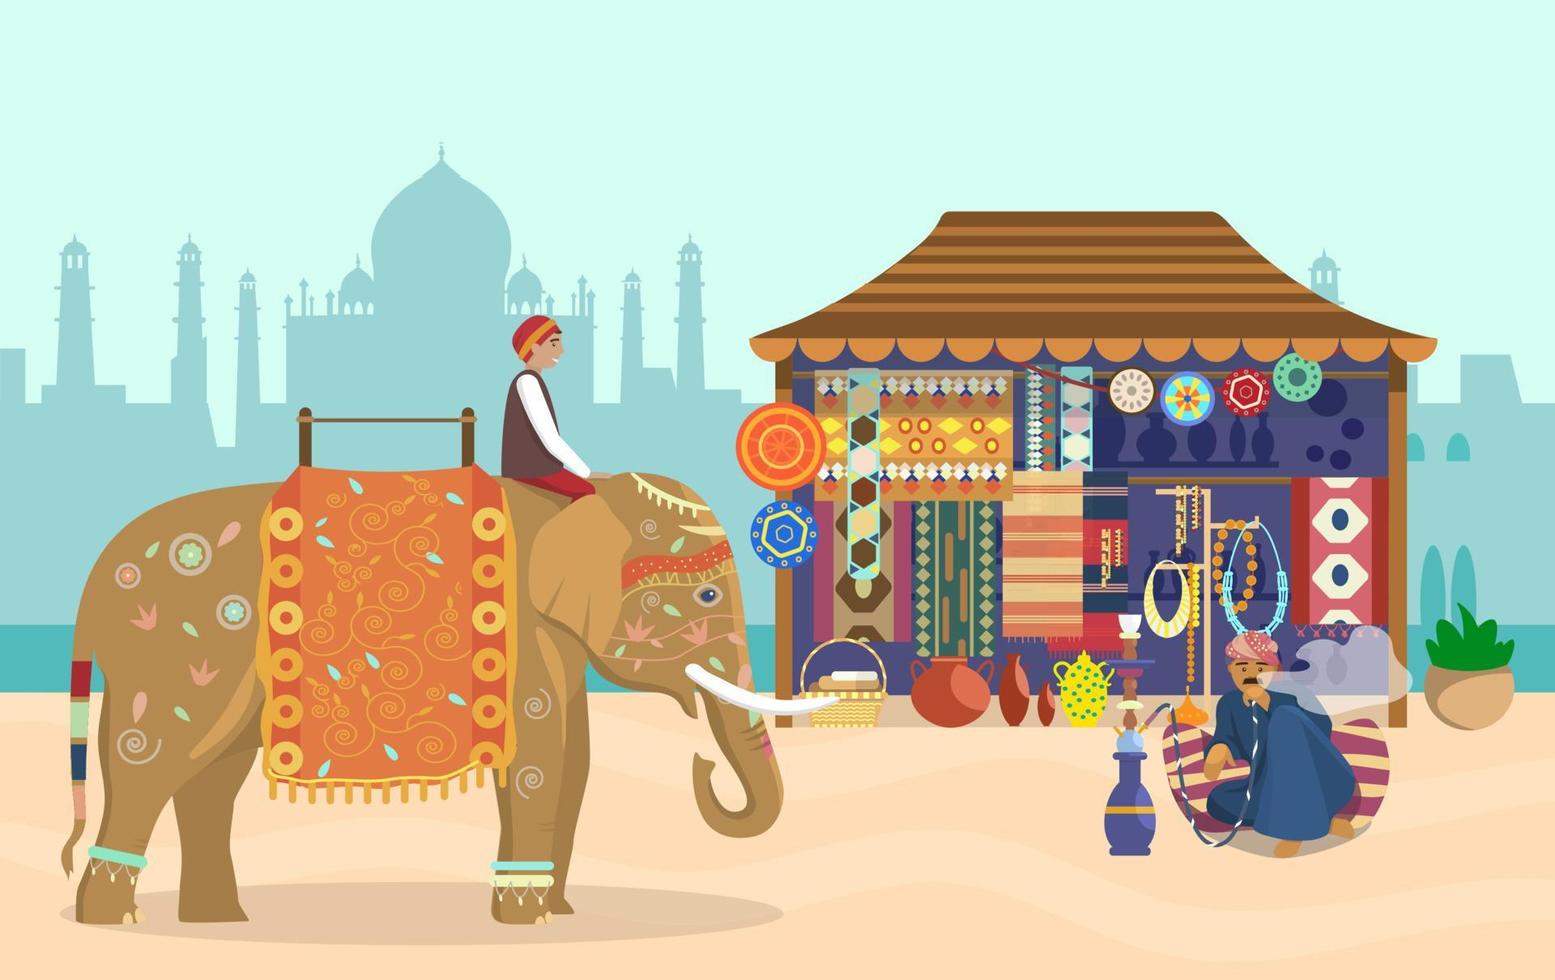 illustration vectorielle de la vie indienne. cavalier d'éléphant sur éléphant décoré, silhouette taj mahal, boutique de souvenirs, poterie, tapis, tissus, bijoux, homme fumant le narguilé assis sur un oreiller. vecteur